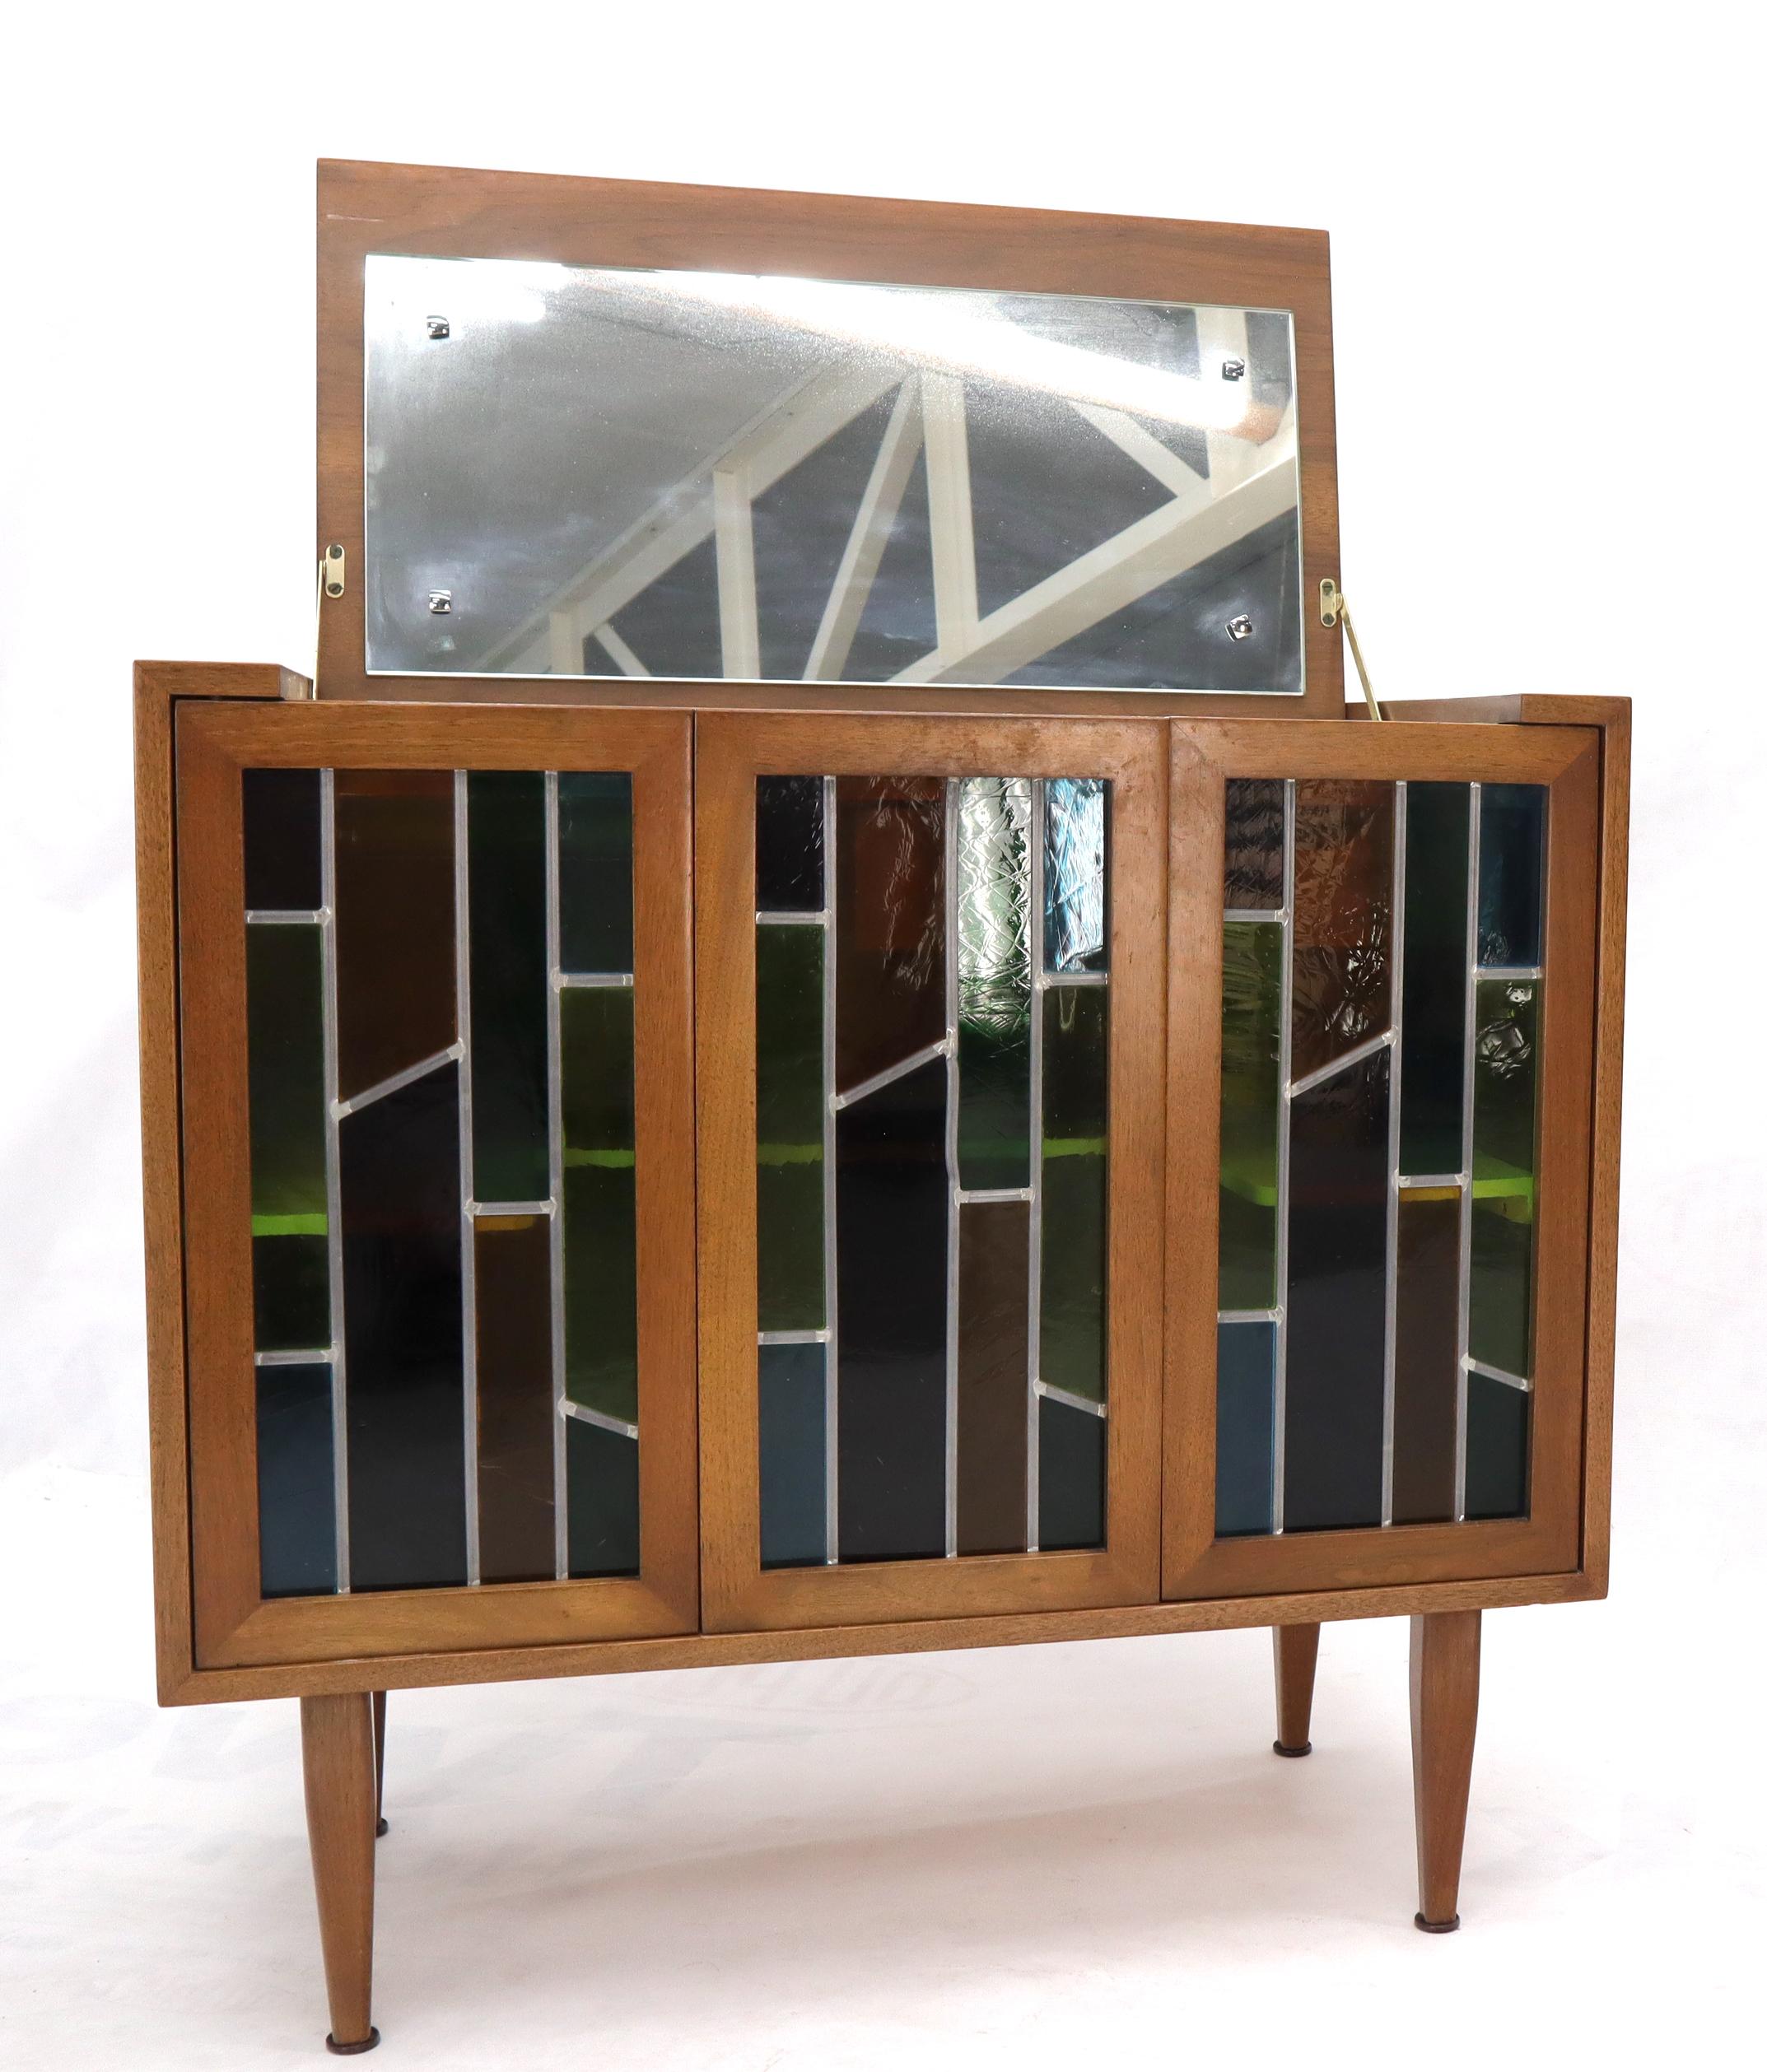 Paire d'armoires vintage en noyer de bonne qualité, de style Mid-Century Modern. L'armoire pliante en verre teinté est dotée d'un plateau en miroir relevable, de charnières en laiton, d'éclairages internes et peut servir d'armoire à liqueurs ou de